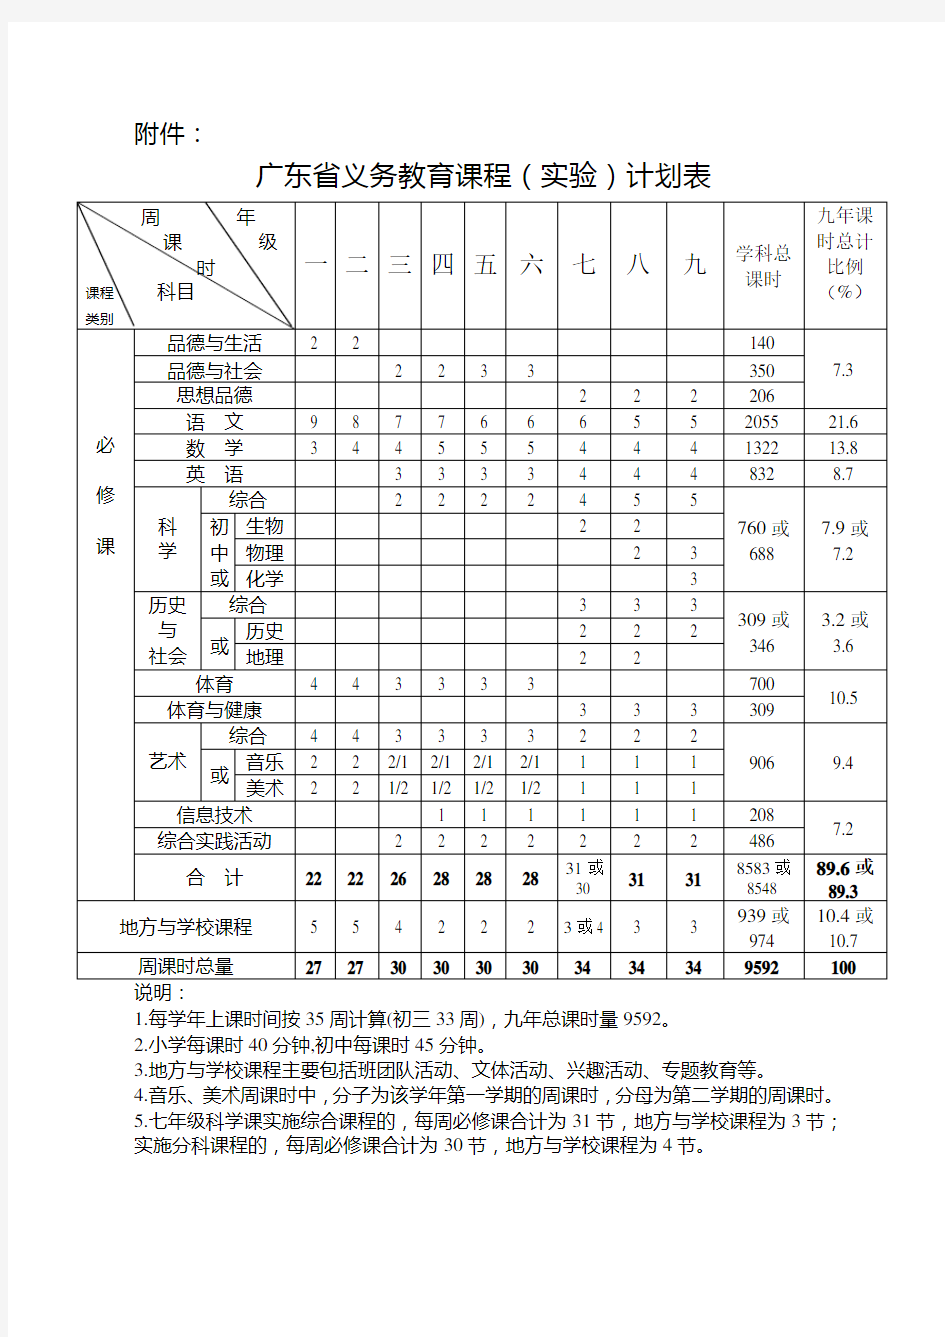 (完整版)广东省义务教育课程(实验)计划表(最新)